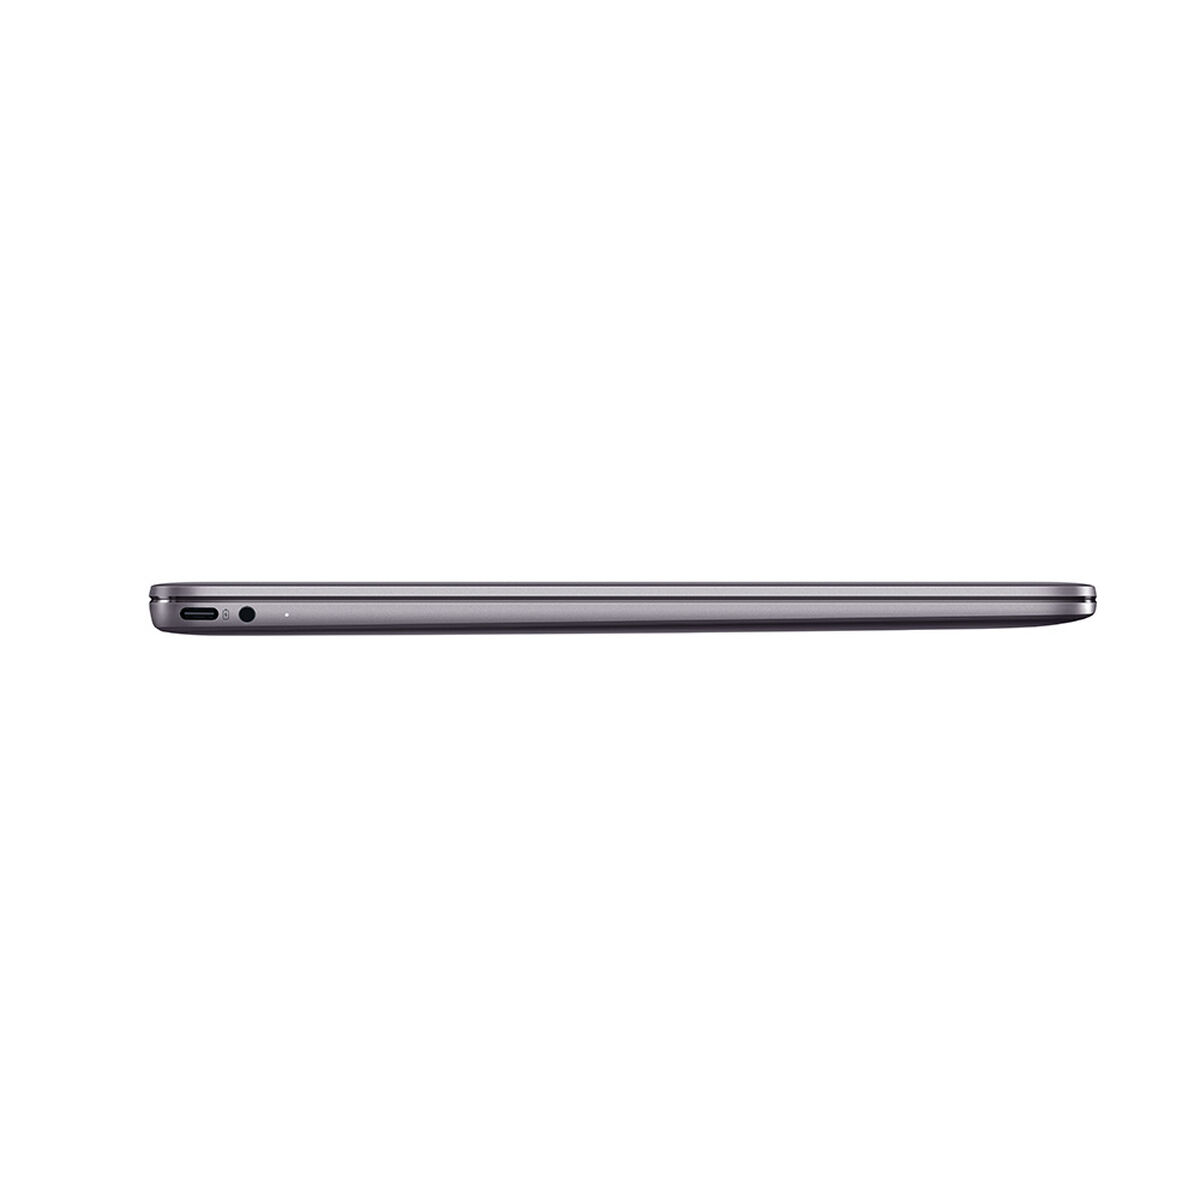 Notebook Huawei Matebook 13 Core i5 8GB 512GB SSD 13.3"  + Tablet MediaPad T5 10 3GB 32GB 10.1" Azul